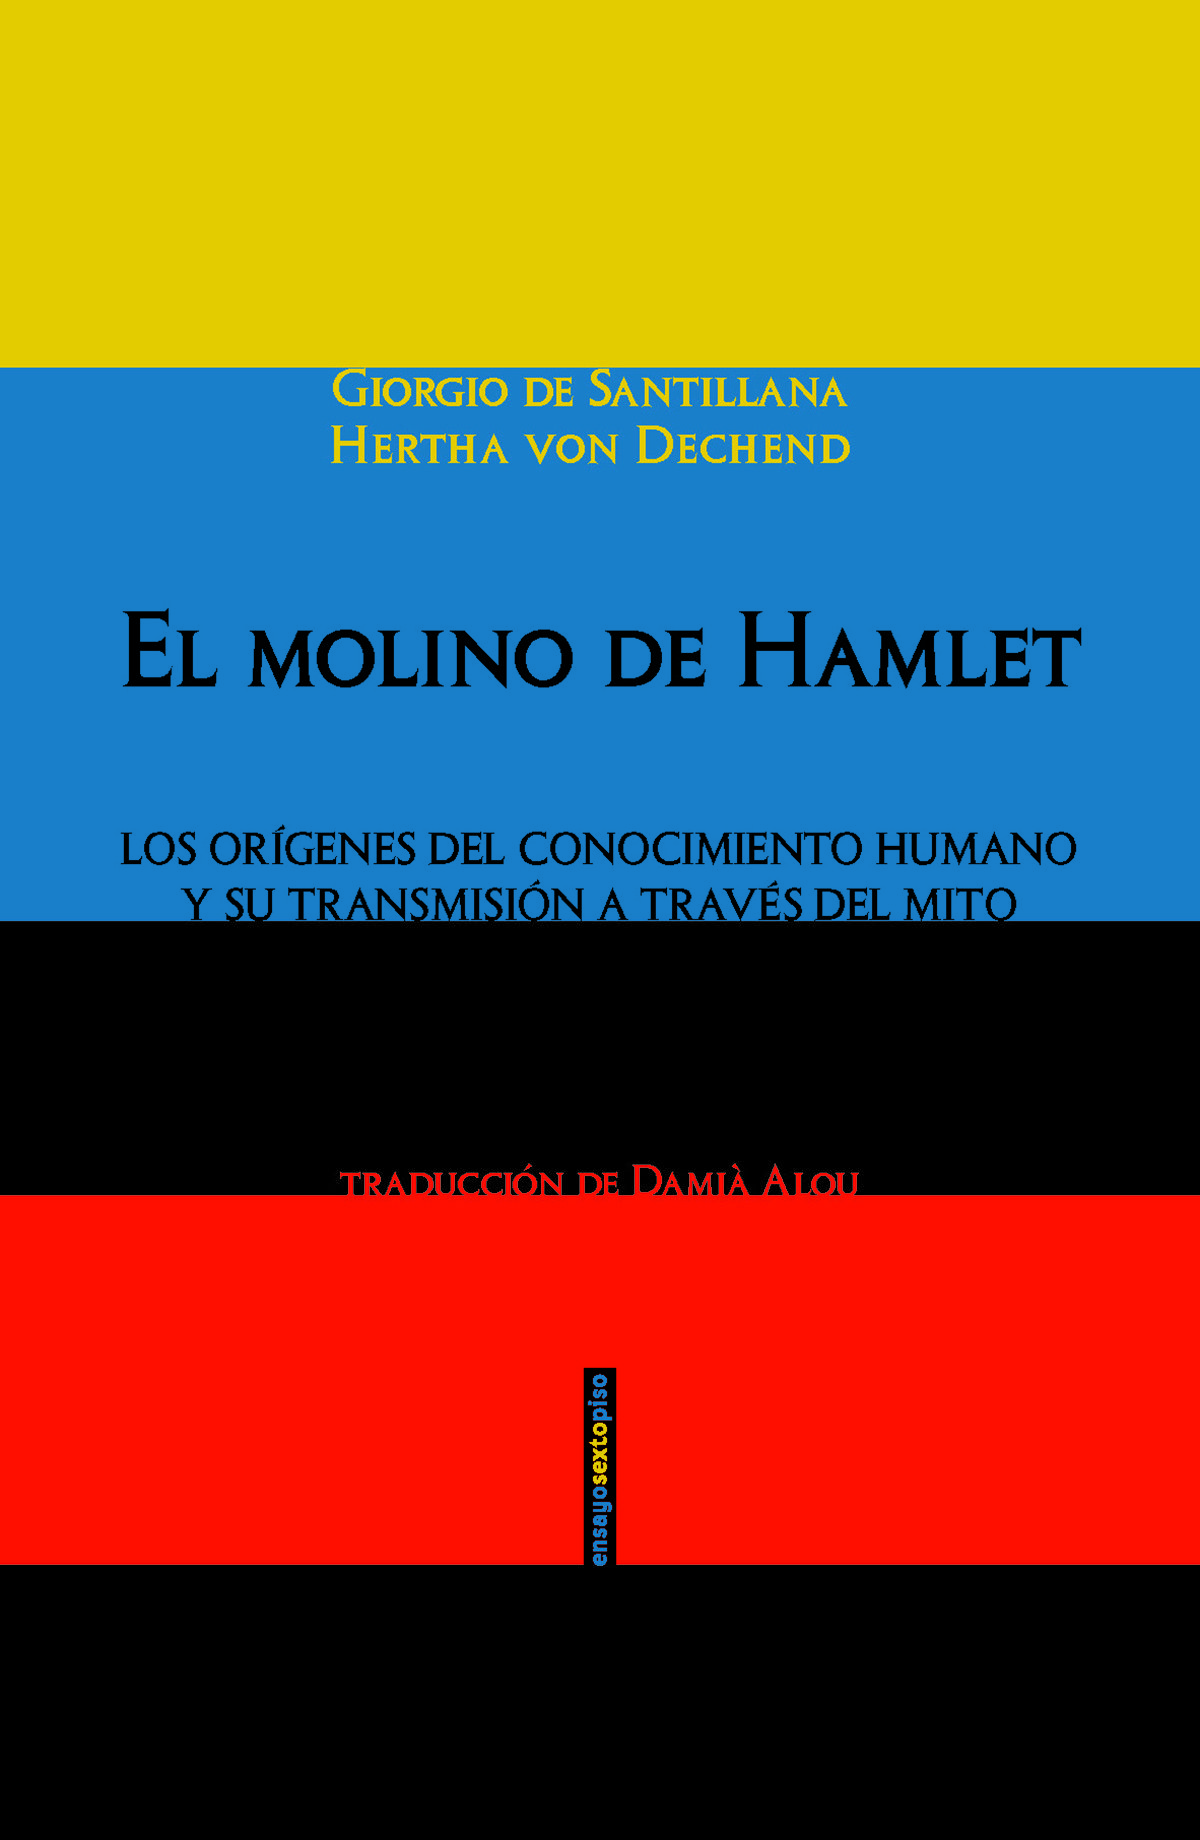 EL MOLINO DE HAMLET. LOS ORÍGENES DEL CONOCIMIENTO HUMANO Y SU TRANSMISIÓN A TRAVÉS DEL MITO